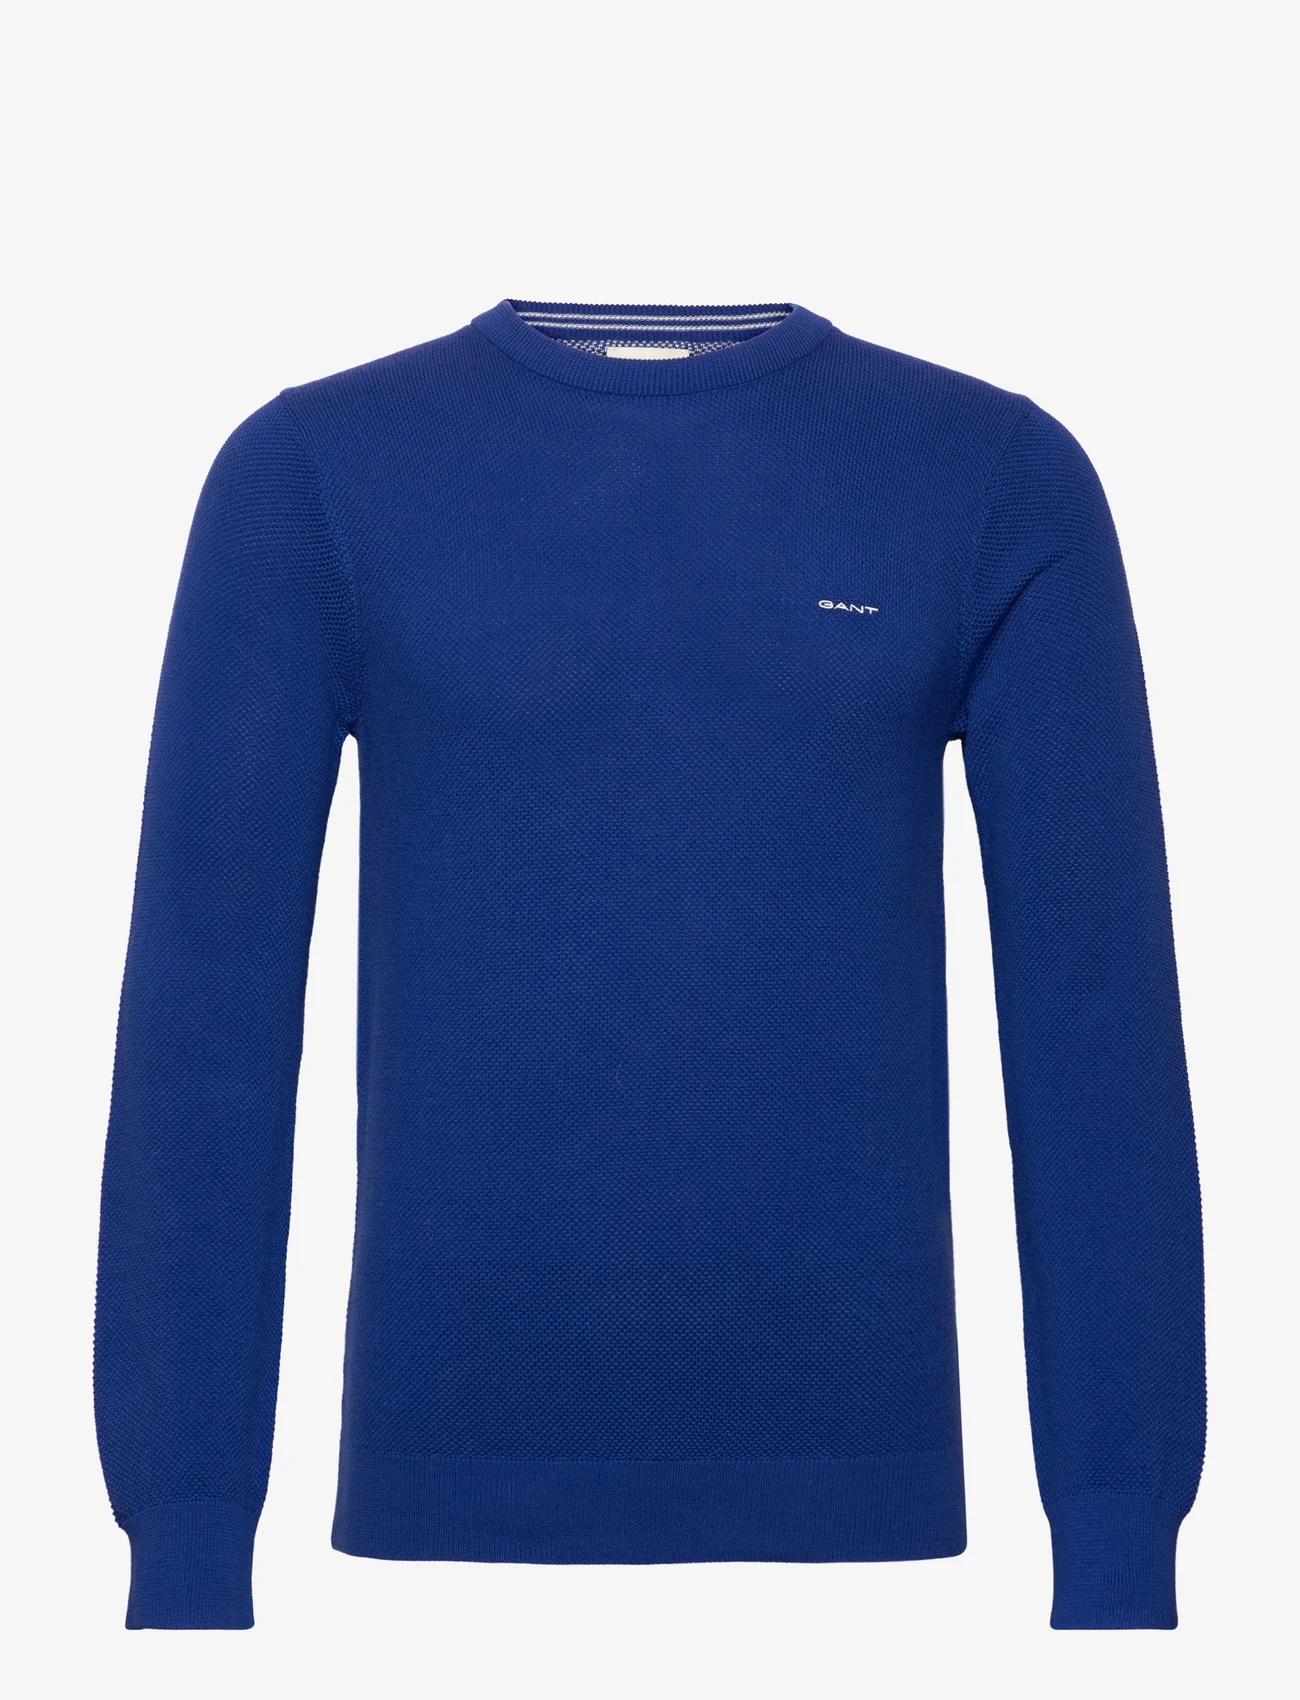 GANT - COTTON PIQUE C-NECK - knitted round necks - college blue - 0